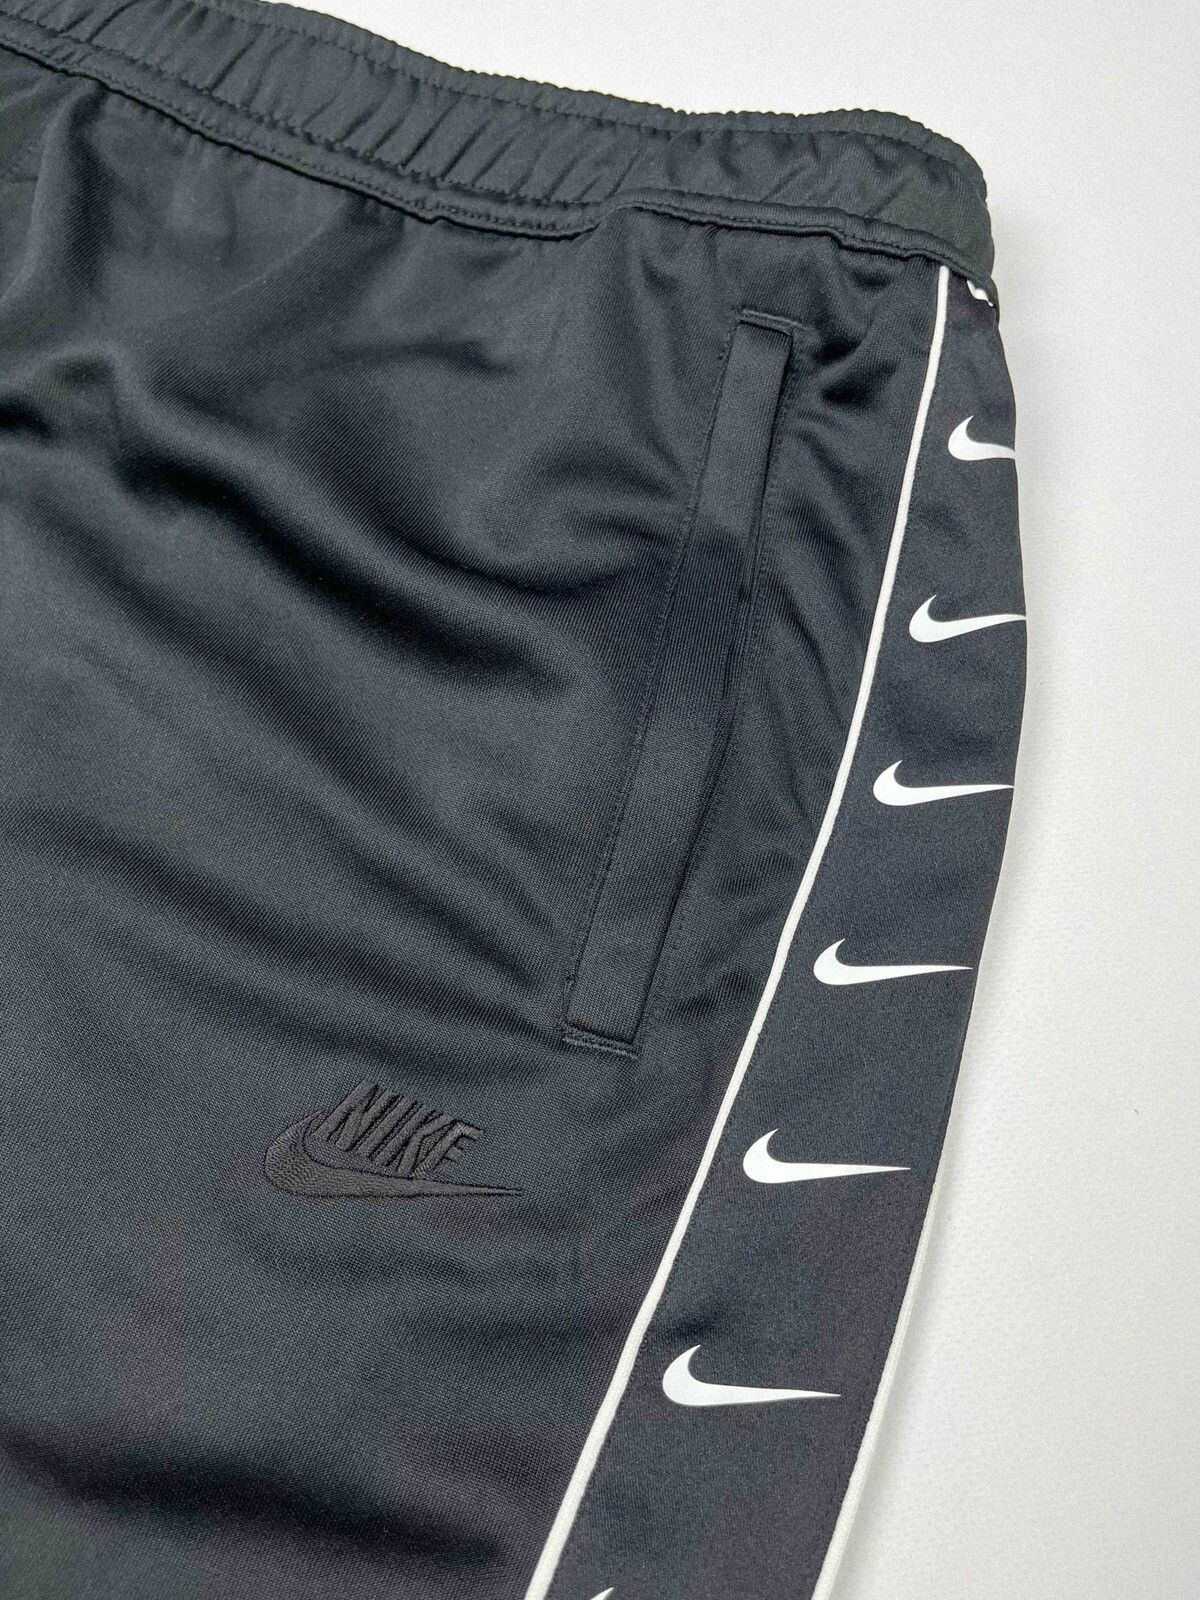 Nike Nike Trackpants Full Side Snap Pants 3XL Size US 40 / EU 56 - 3 Thumbnail